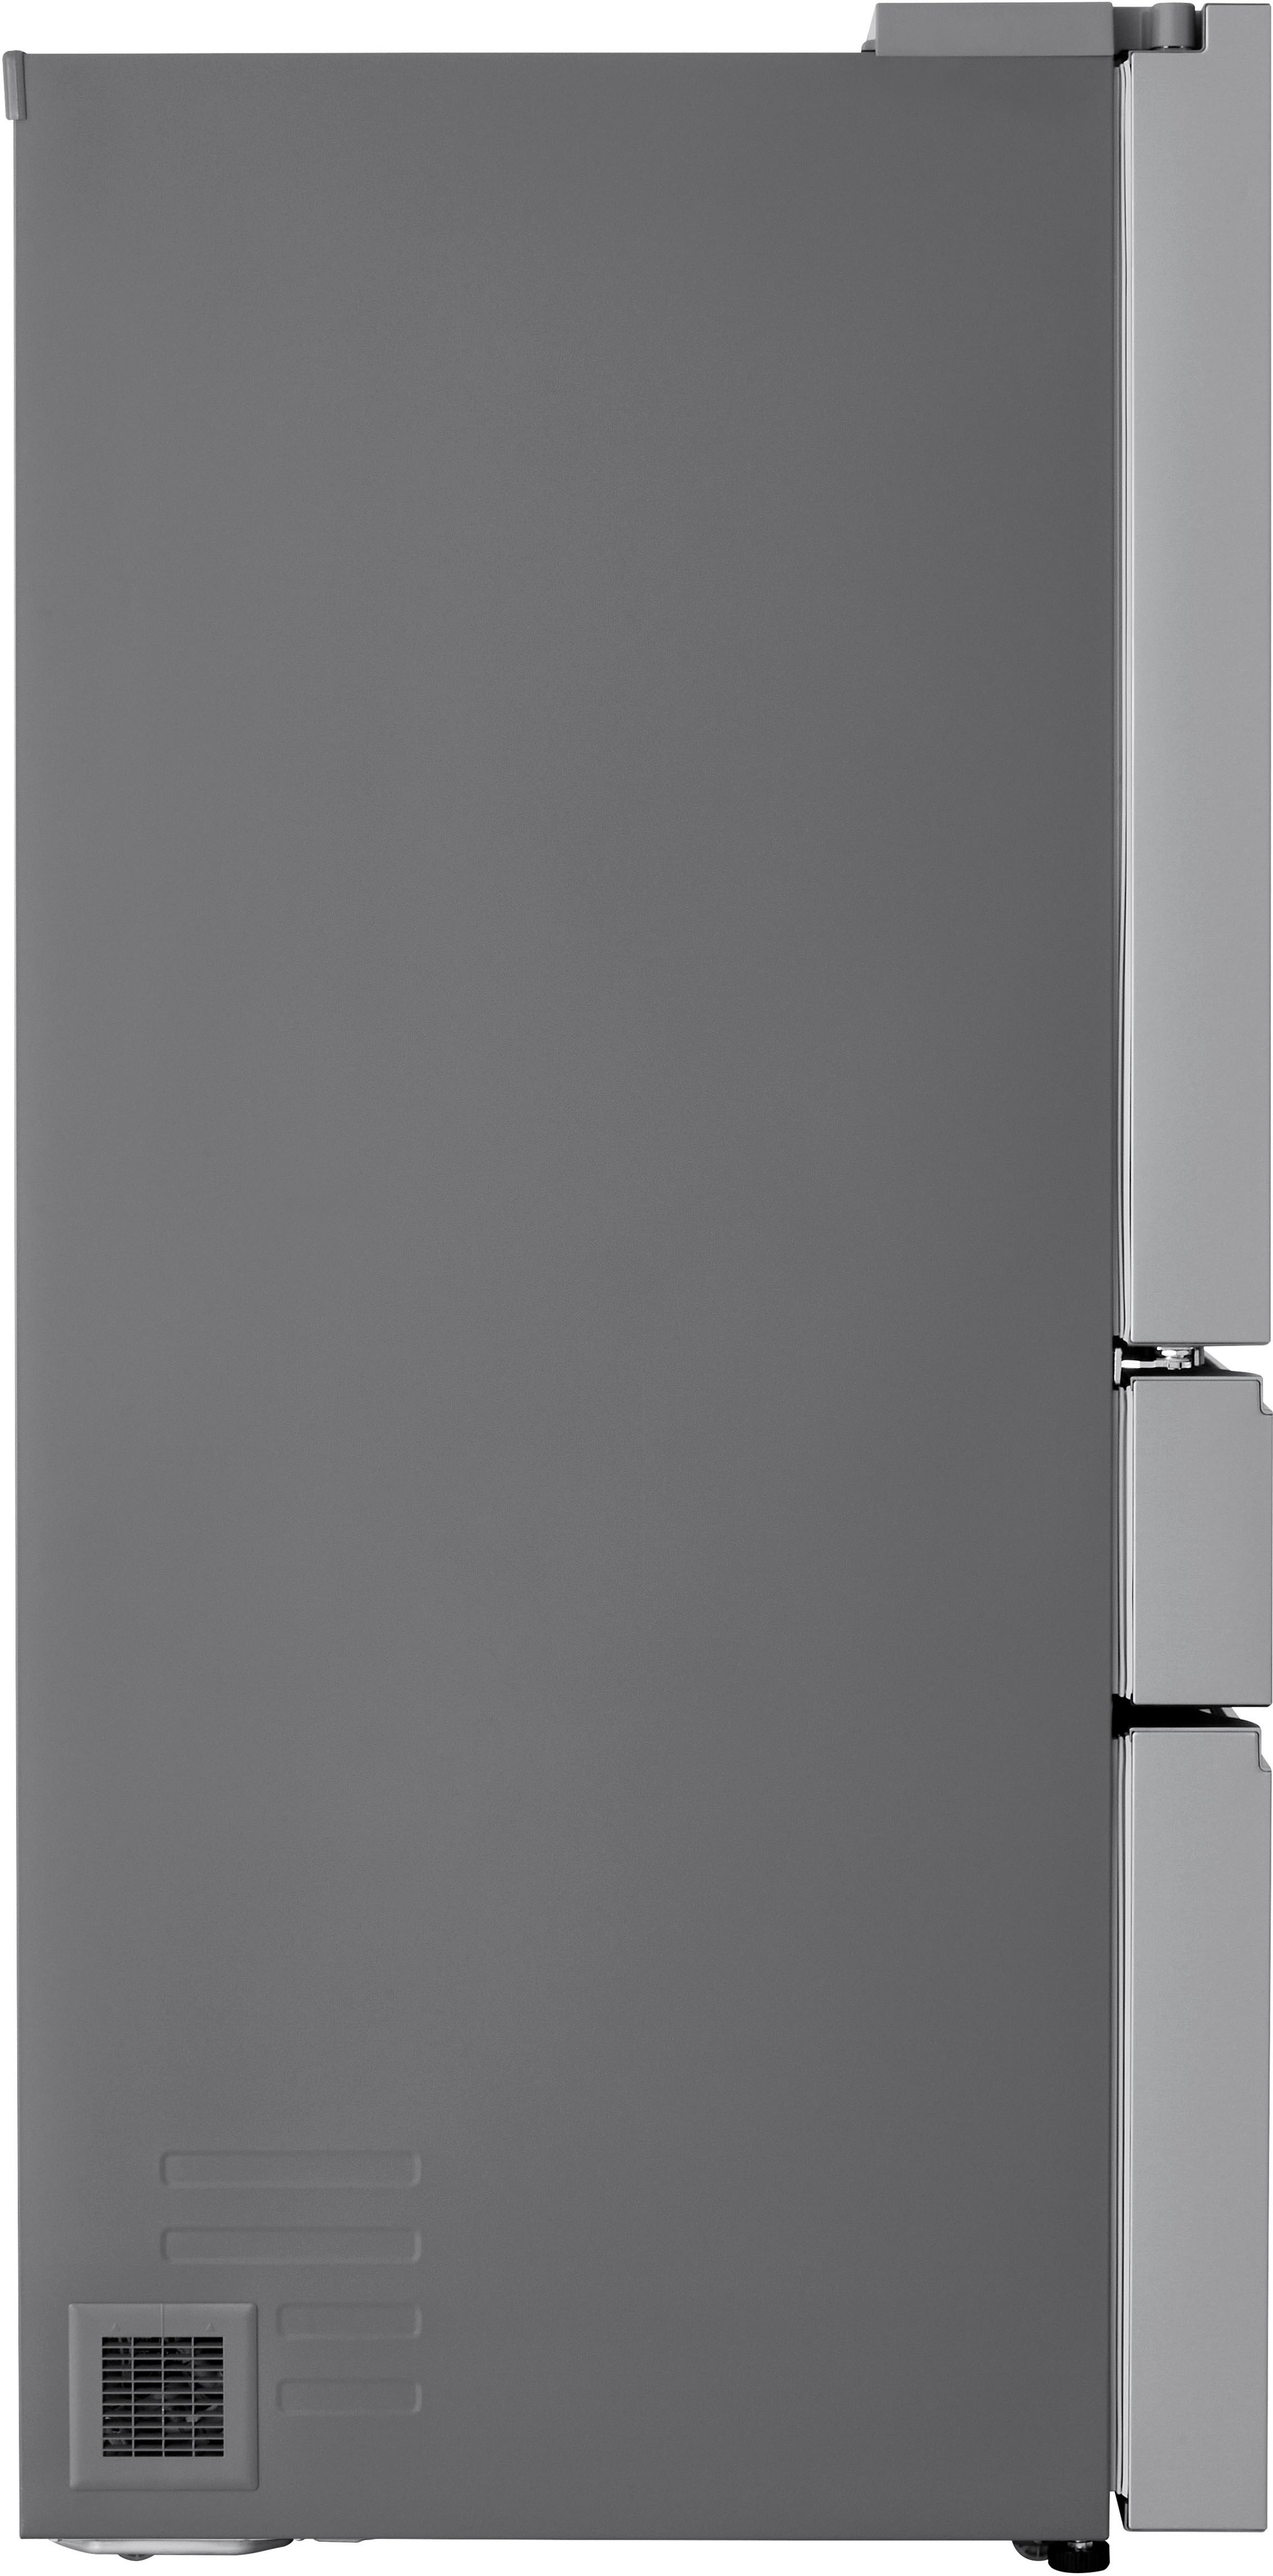 LF29S8330S by LG - 29 cu. ft. Smart Standard-Depth MAX™ 4-Door